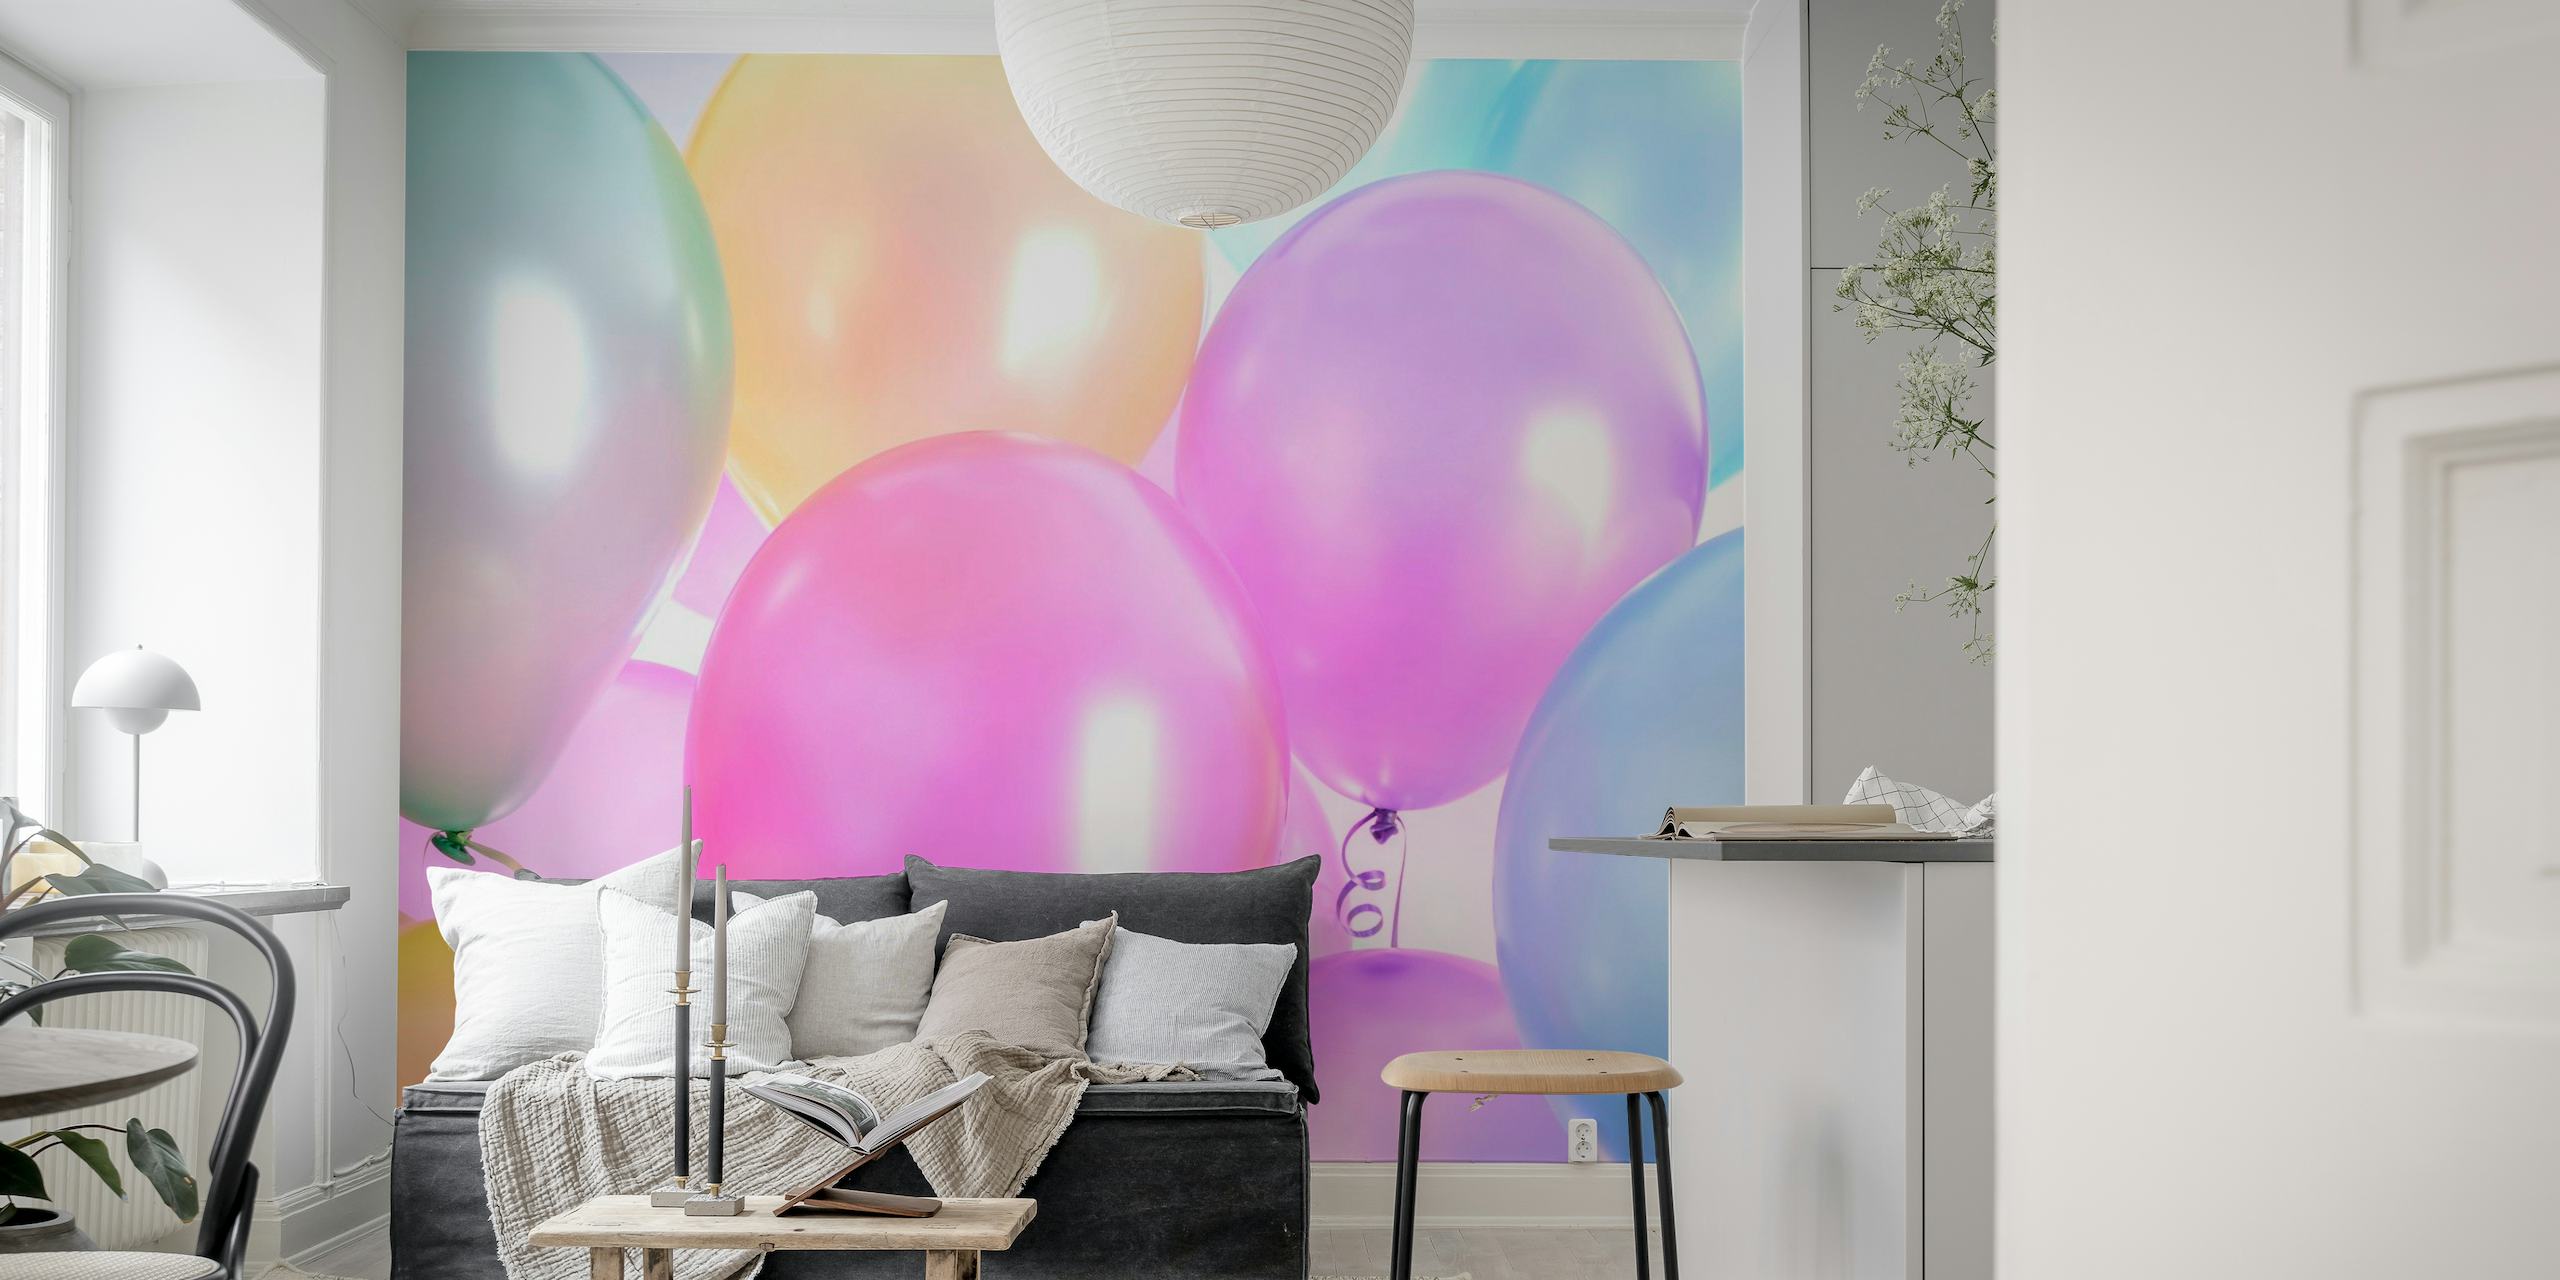 Nástěnná malba s balónky v různých pastelových barvách na Happywall